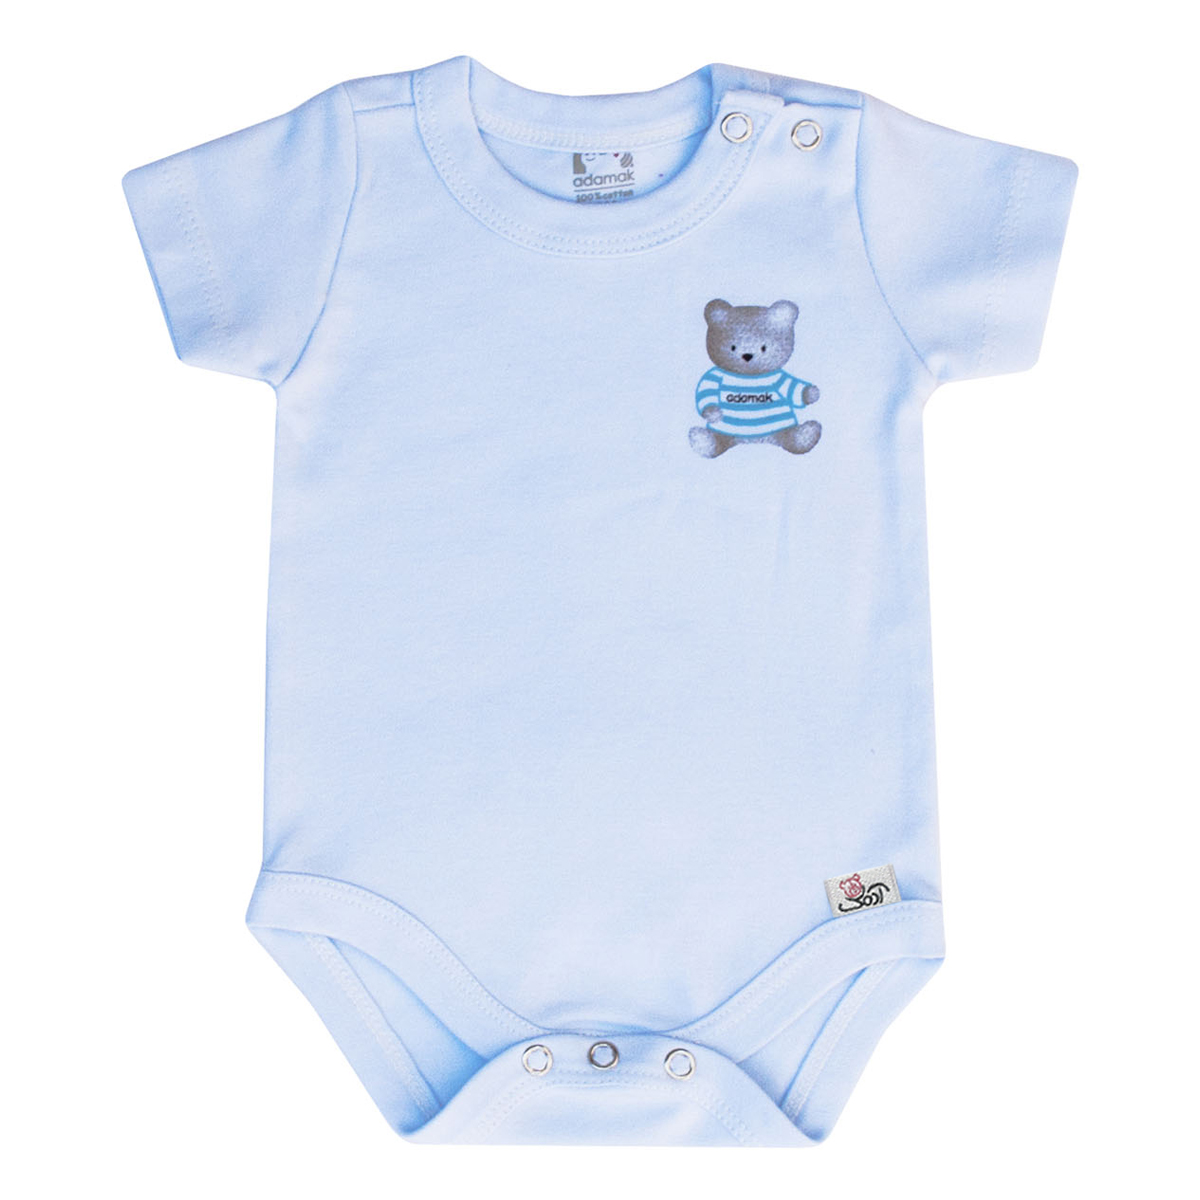 بادی آستین کوتاه نوزاد آدمک طرح خرس رنگ آبی -  - 1